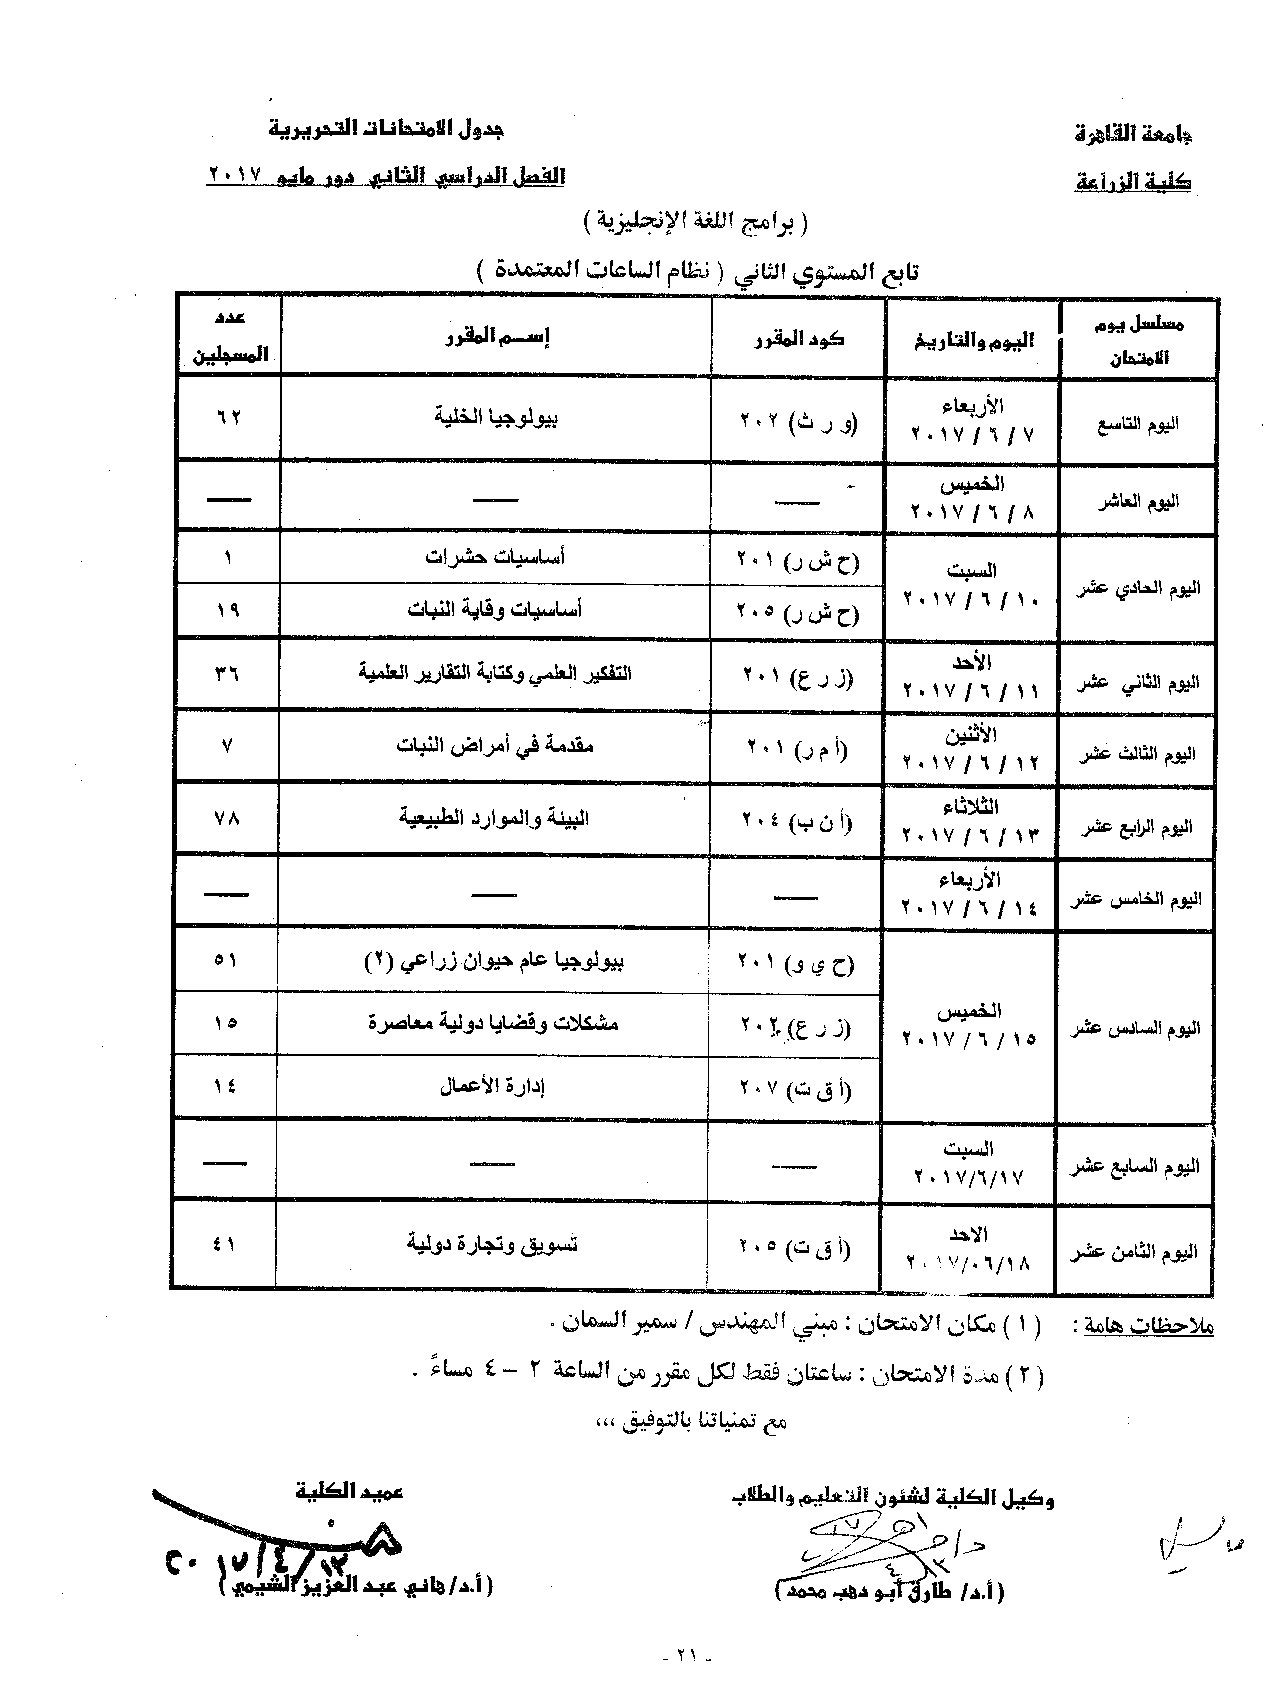                            جدول الامتحانات   الفصل الدراسي  الثاني   دور  مايو   2017 